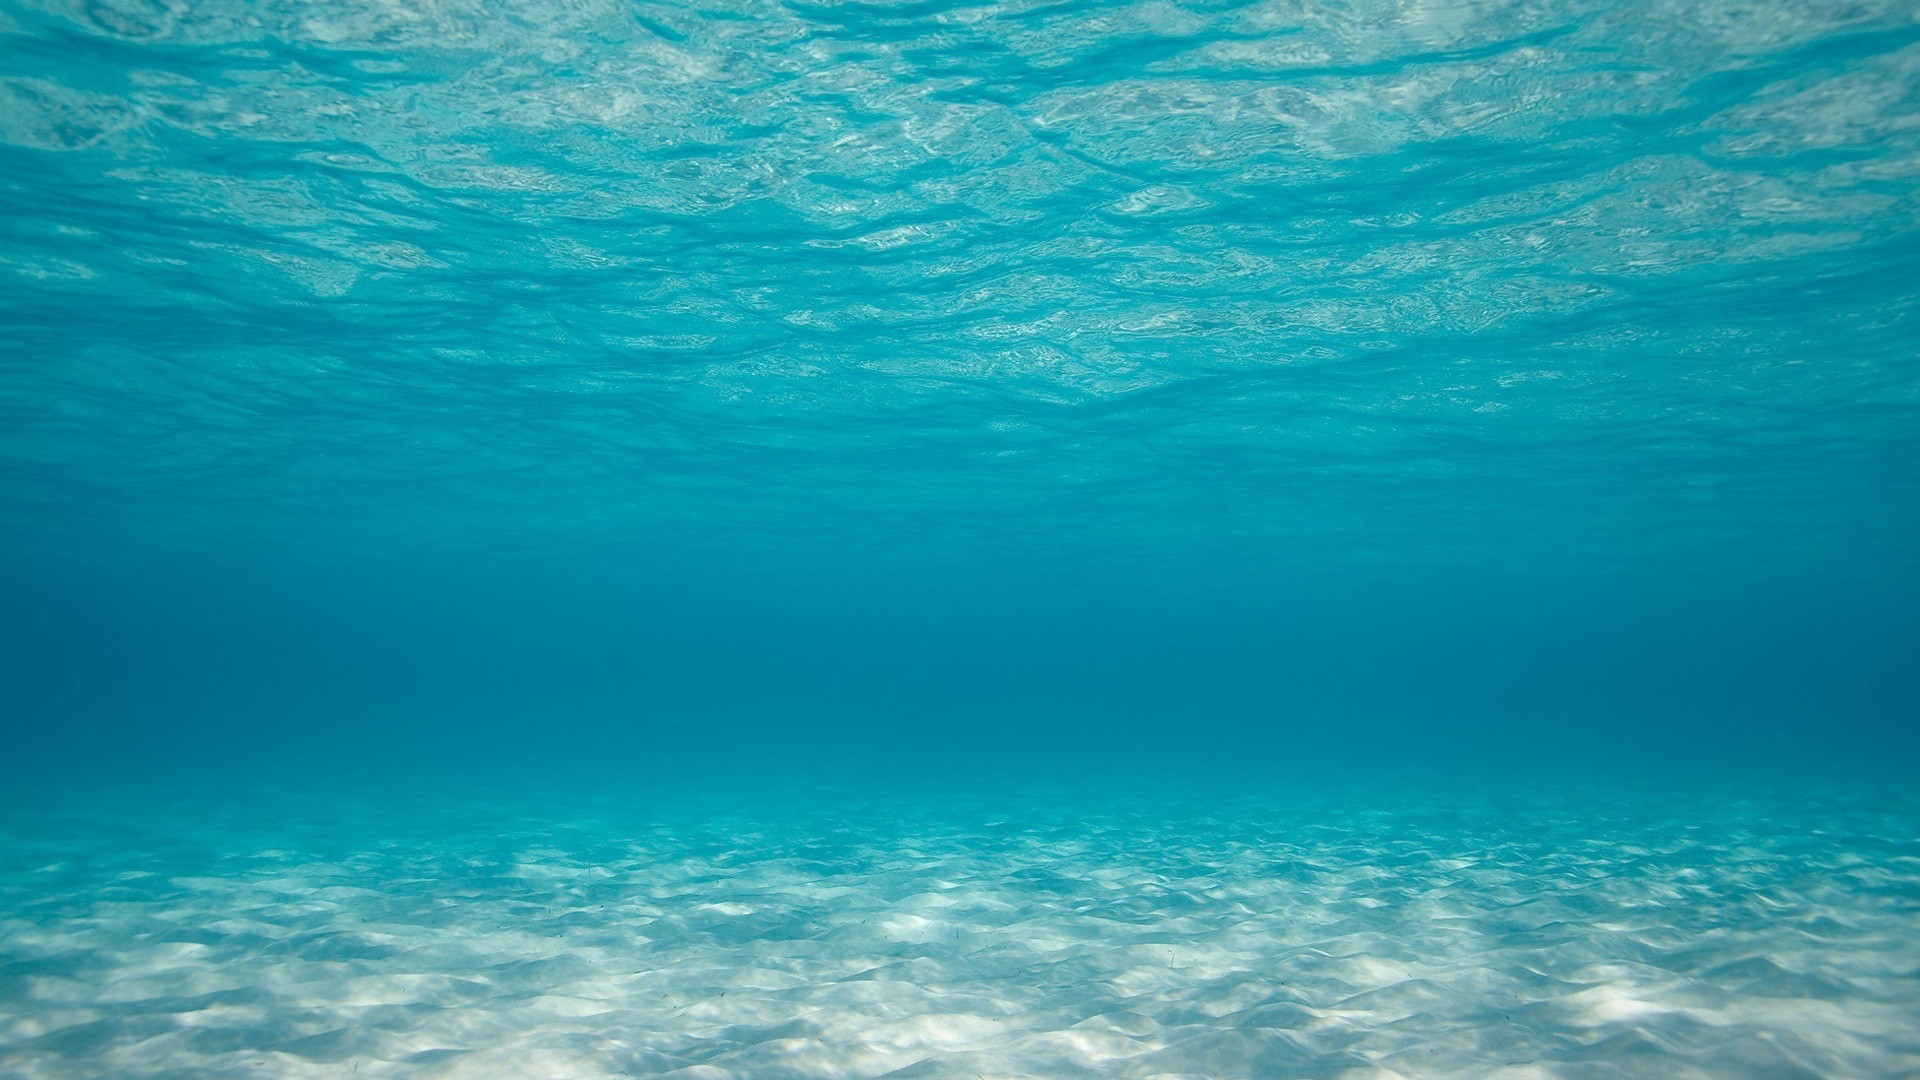 fondo del océano profundo,azul,agua,agua,turquesa,cielo